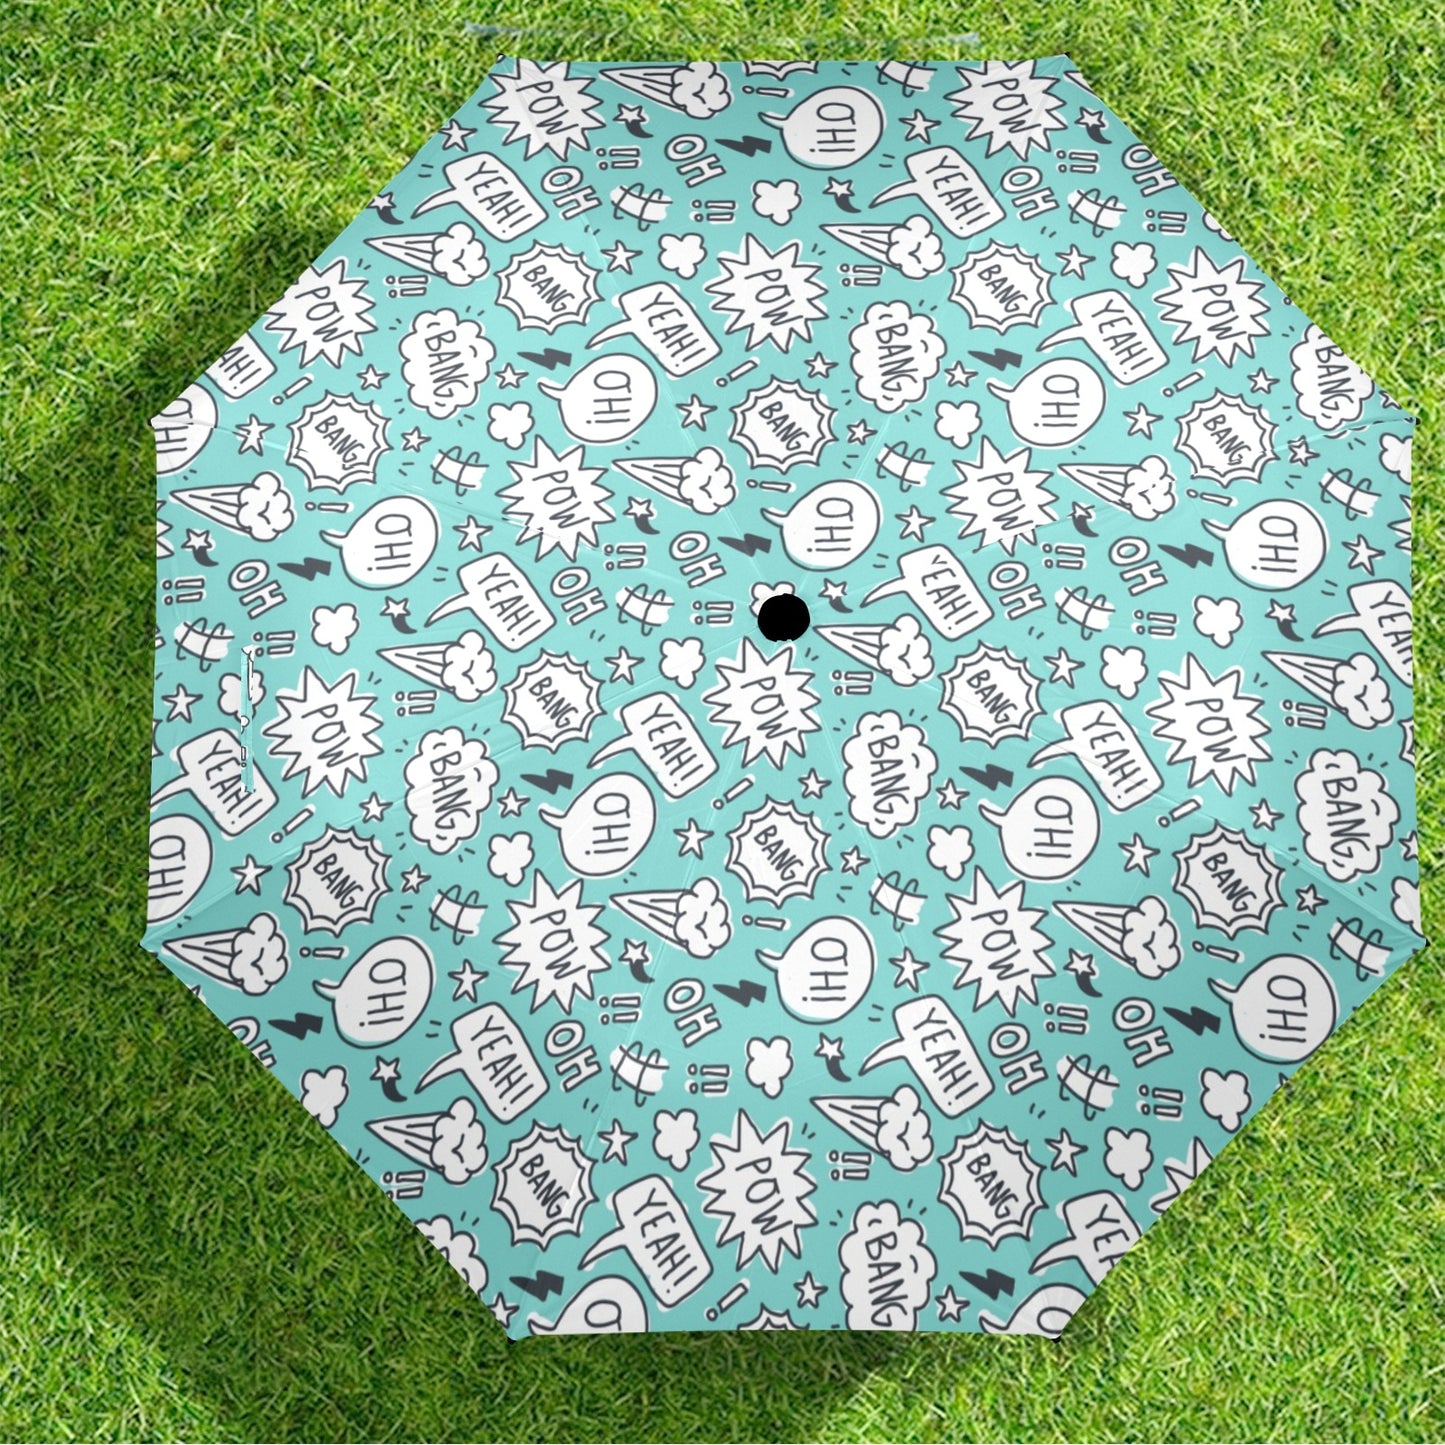 Comic Book Speech Bubbles - Semi-Automatic Foldable Umbrella Semi-Automatic Foldable Umbrella